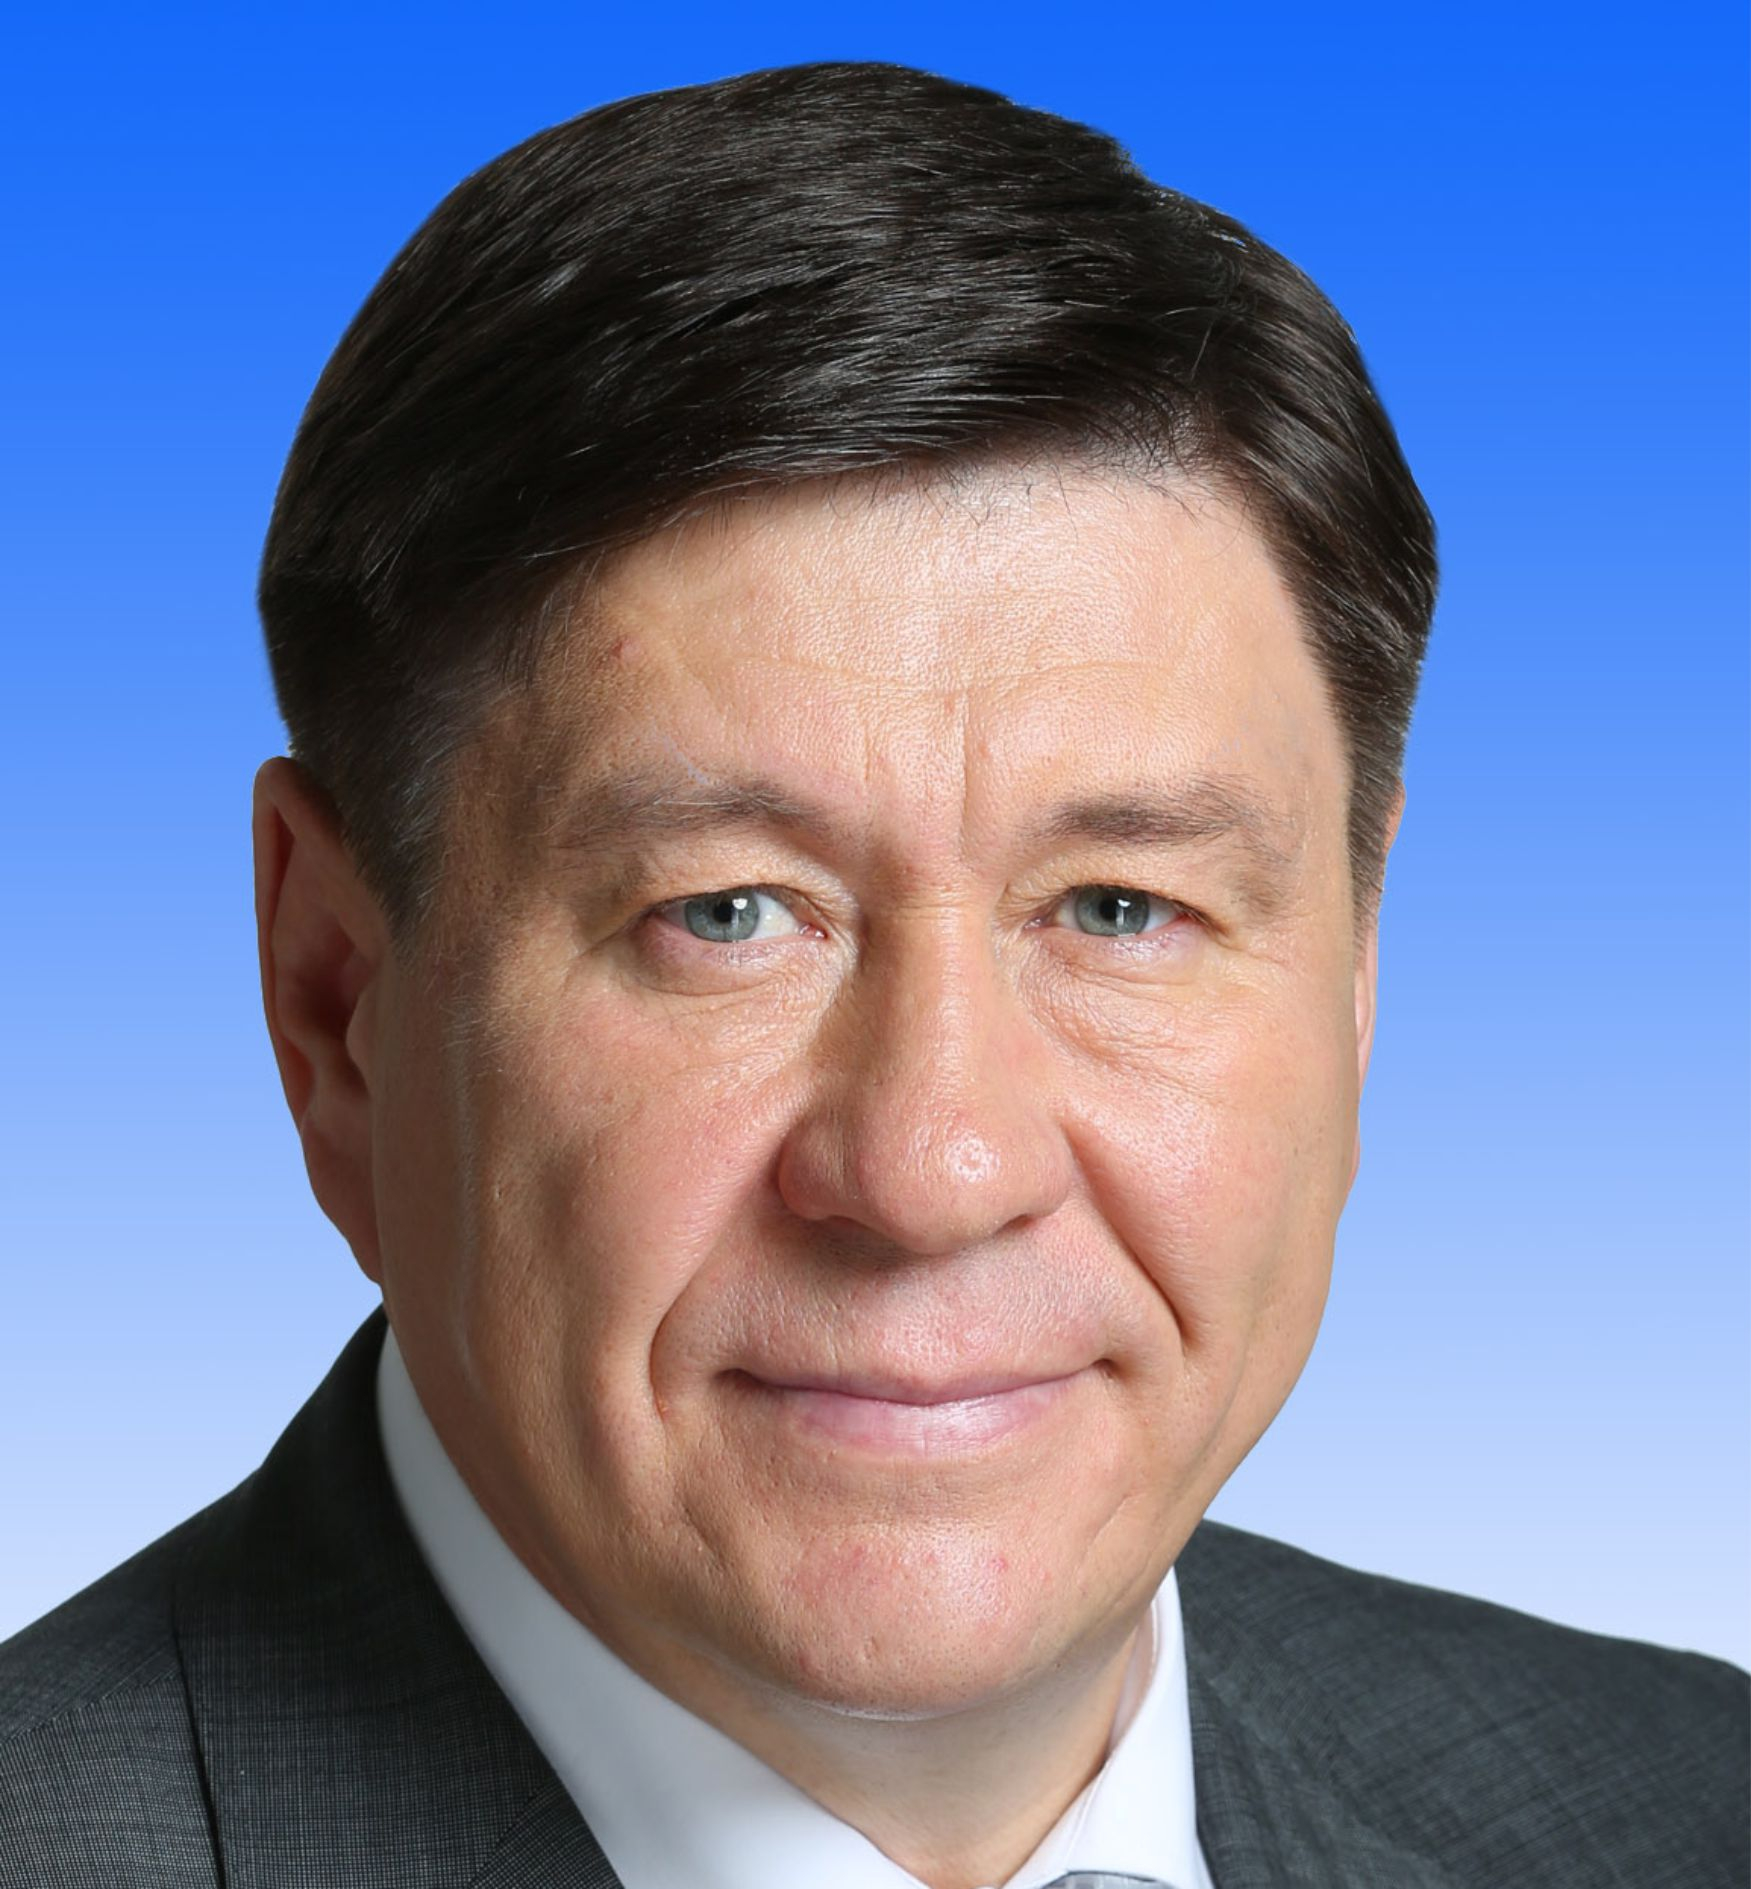 Ларионов Сергей Александрович